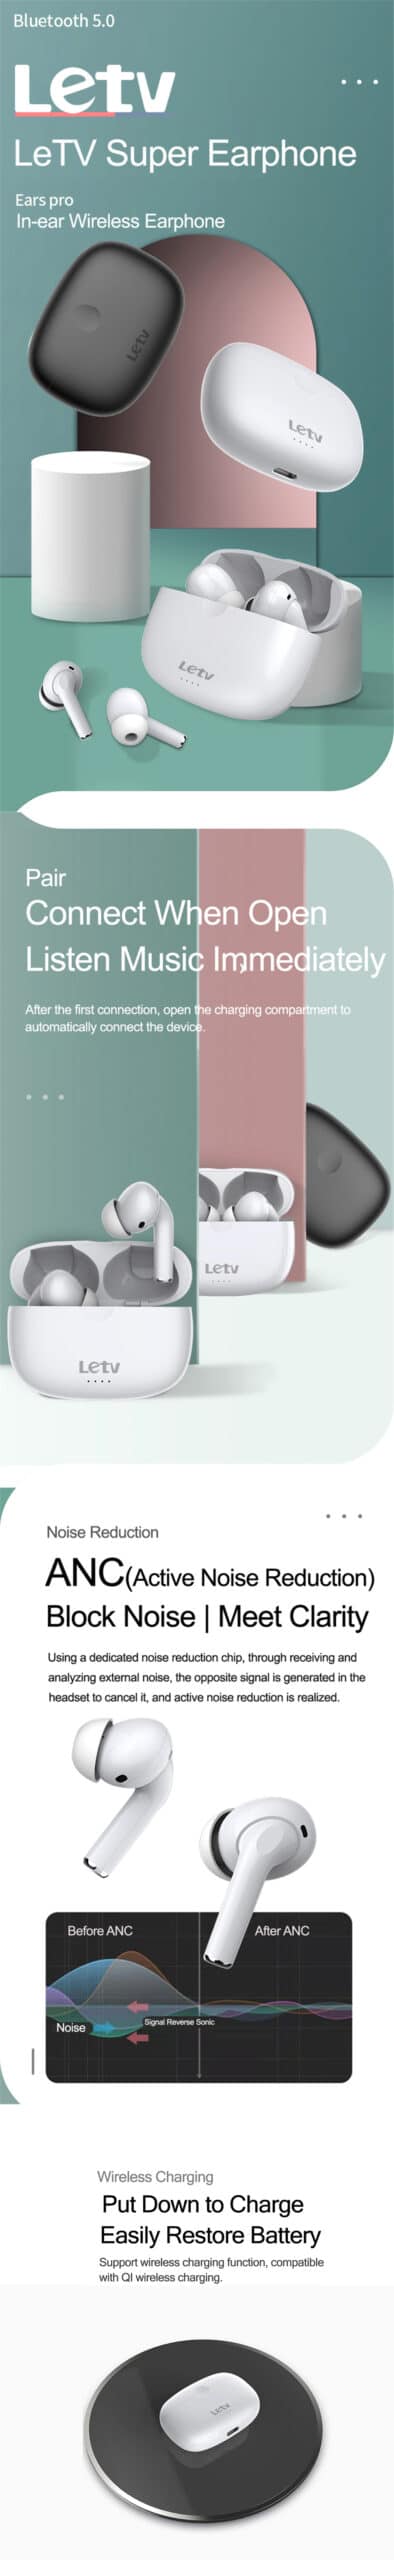 Letv Ears Pro True Wireless Earphone 7 scaled